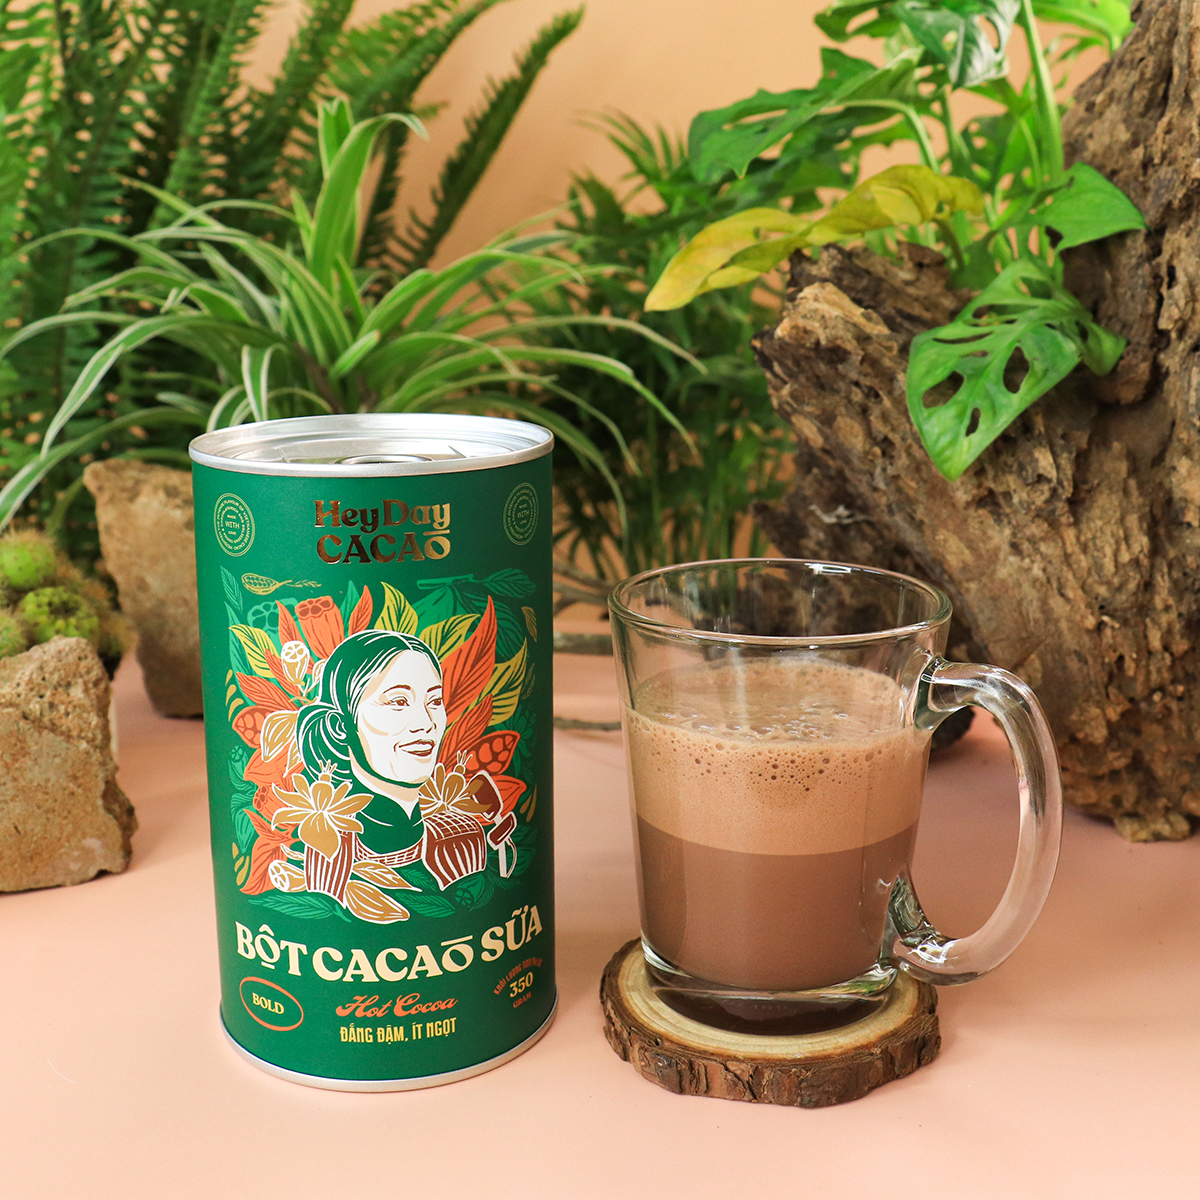 Bột cacao sữa Bold - Đắng đậm, Ít ngọt - Lon 350g - Bộ Sưu Tập sản phẩm "Thật" Heydaycacao